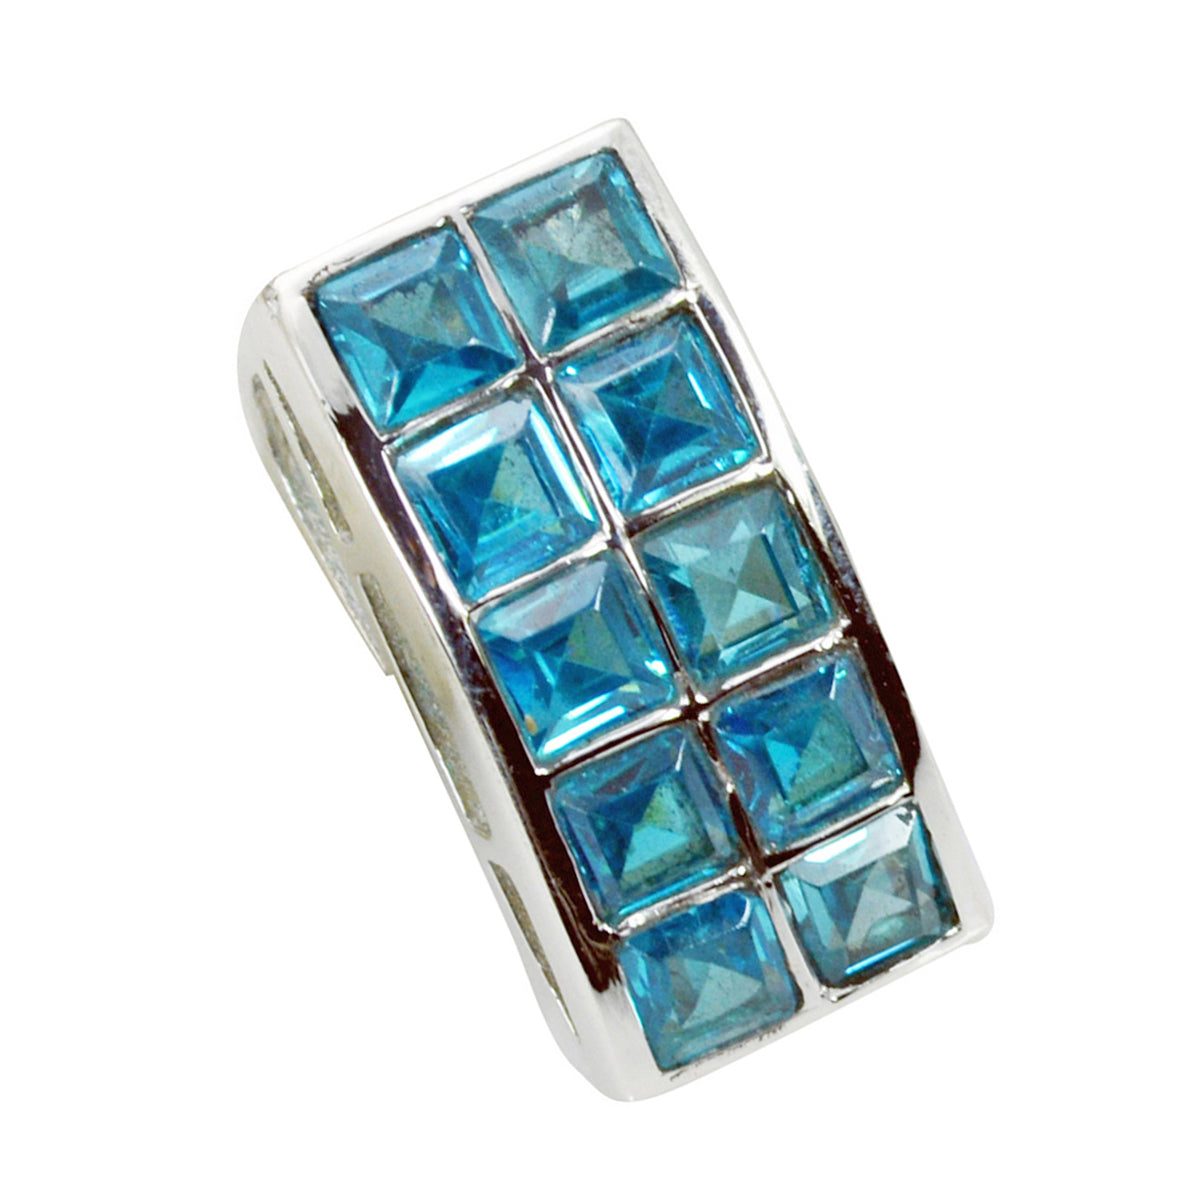 Riyo magnifiques pierres précieuses carré à facettes bleu topaze bleue pendentif en argent massif cadeau pour mariage